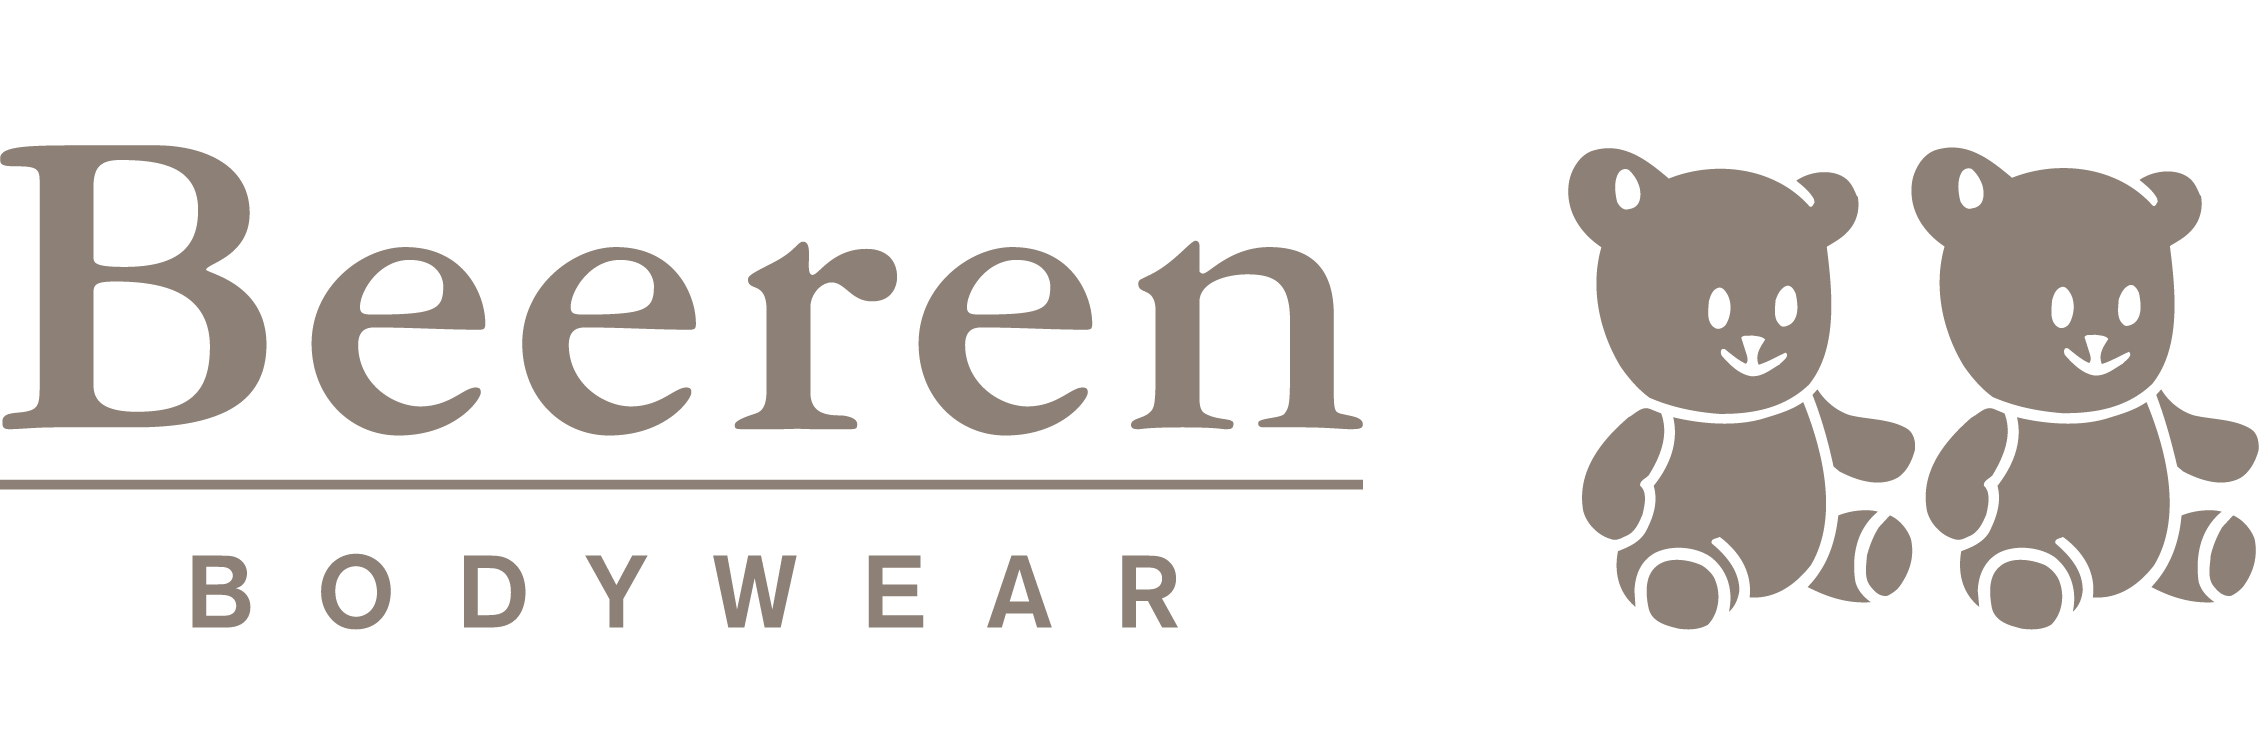 Beeren Bodywear